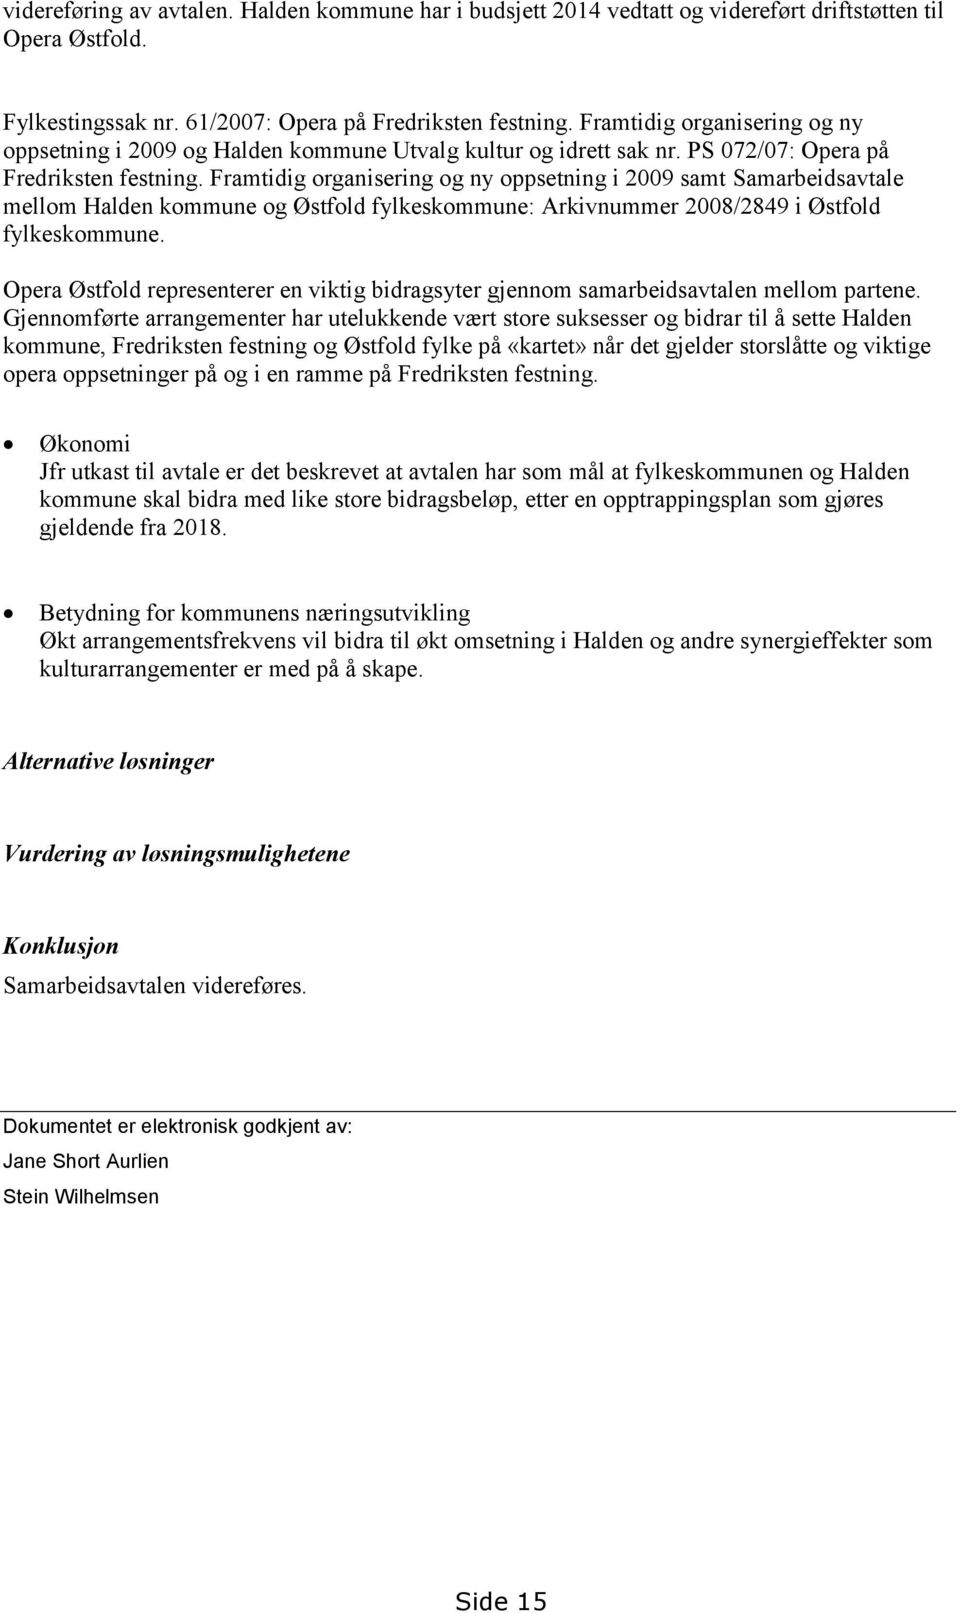 Framtidig organisering og ny oppsetning i 2009 samt Samarbeidsavtale mellom Halden kommune og Østfold fylkeskommune: Arkivnummer 2008/2849 i Østfold fylkeskommune.